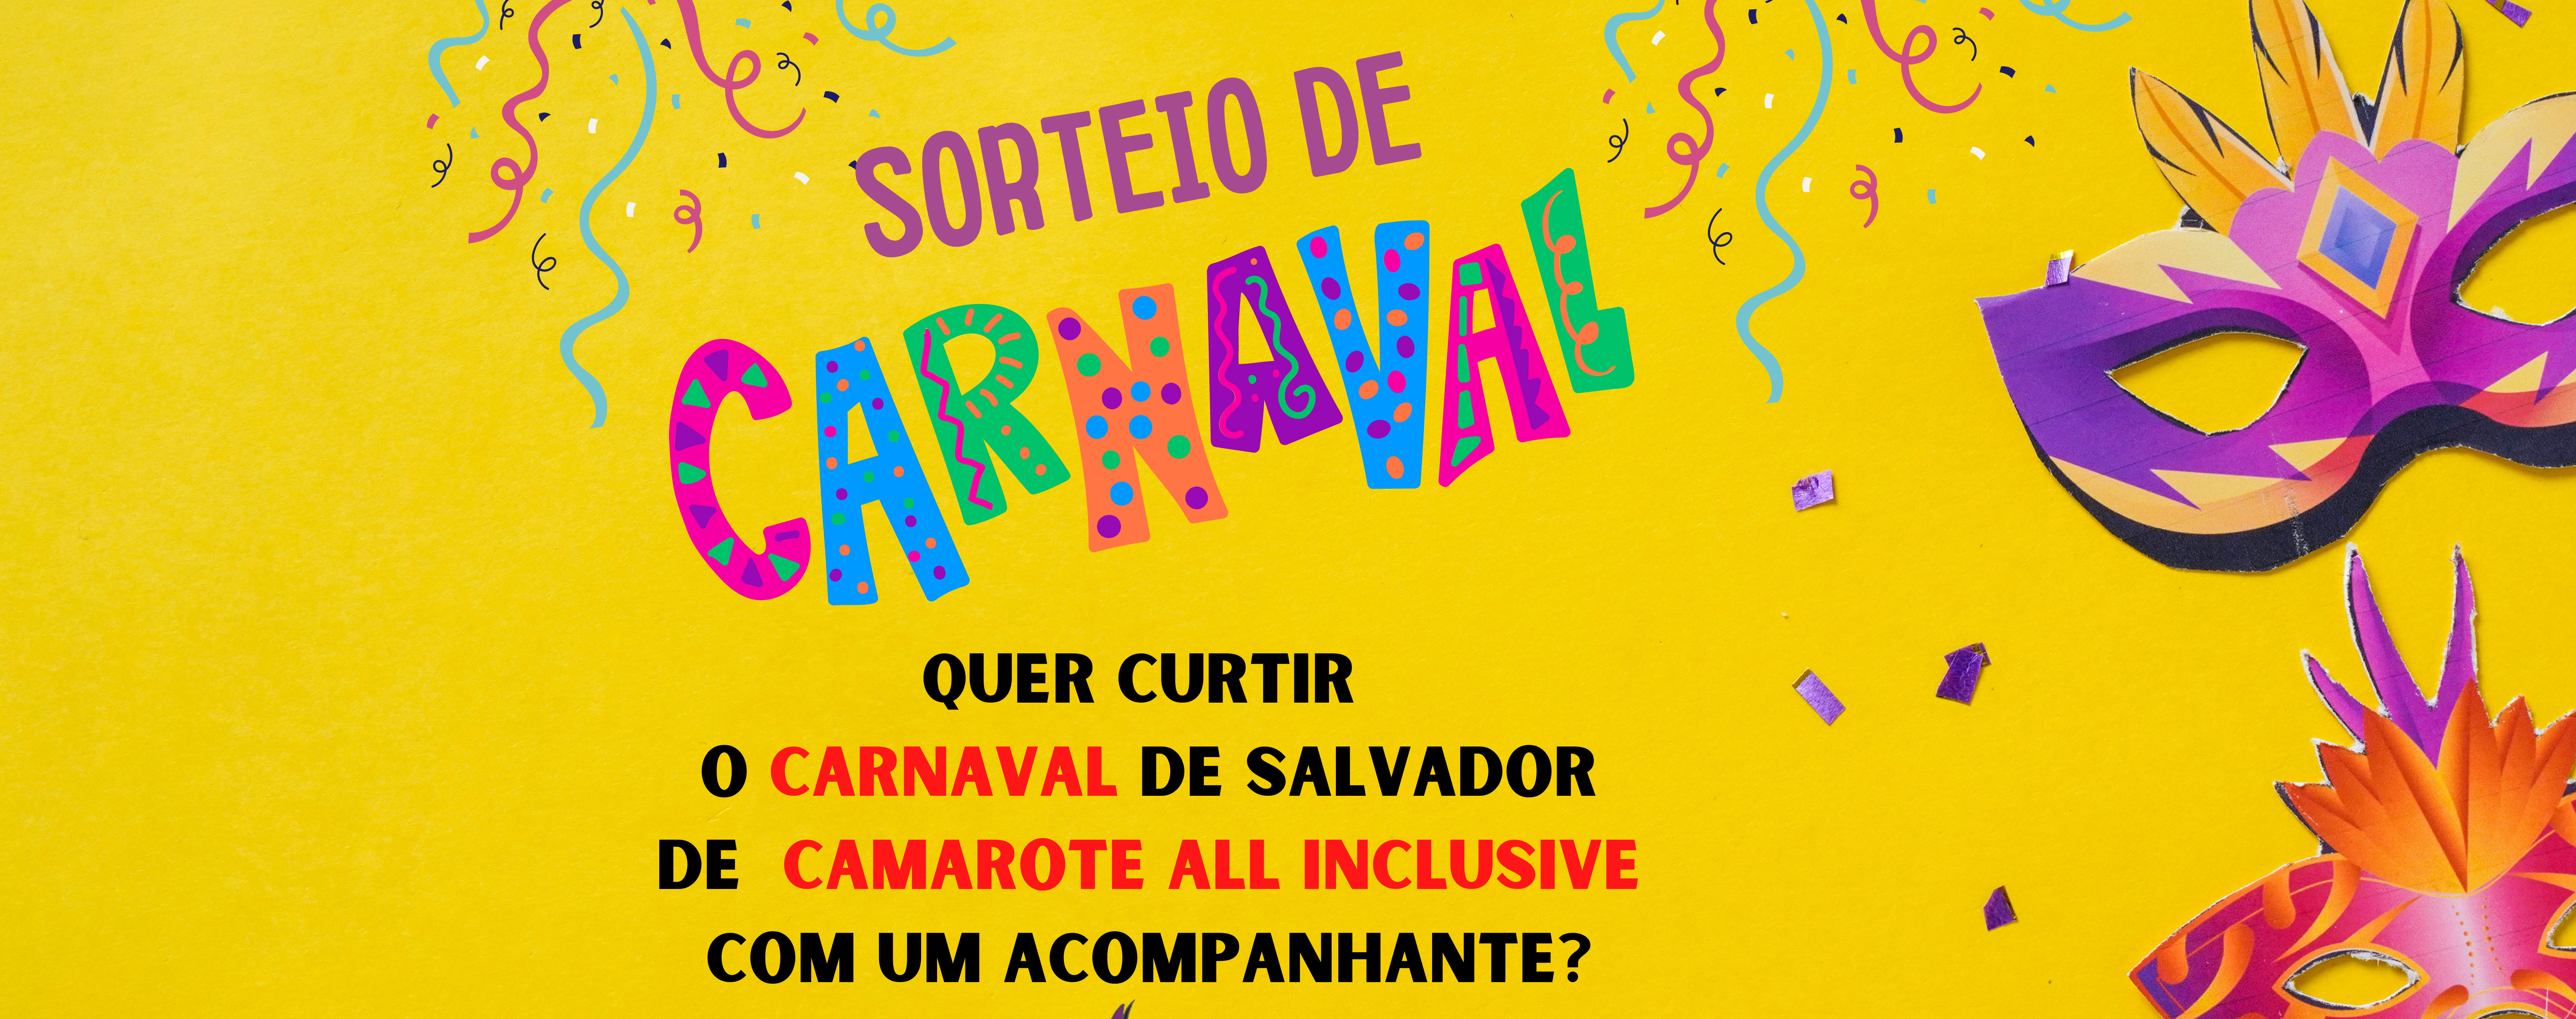 Sinttel Bahia sorteia camarote do carnaval de Salvador para seus filiados. Participe!